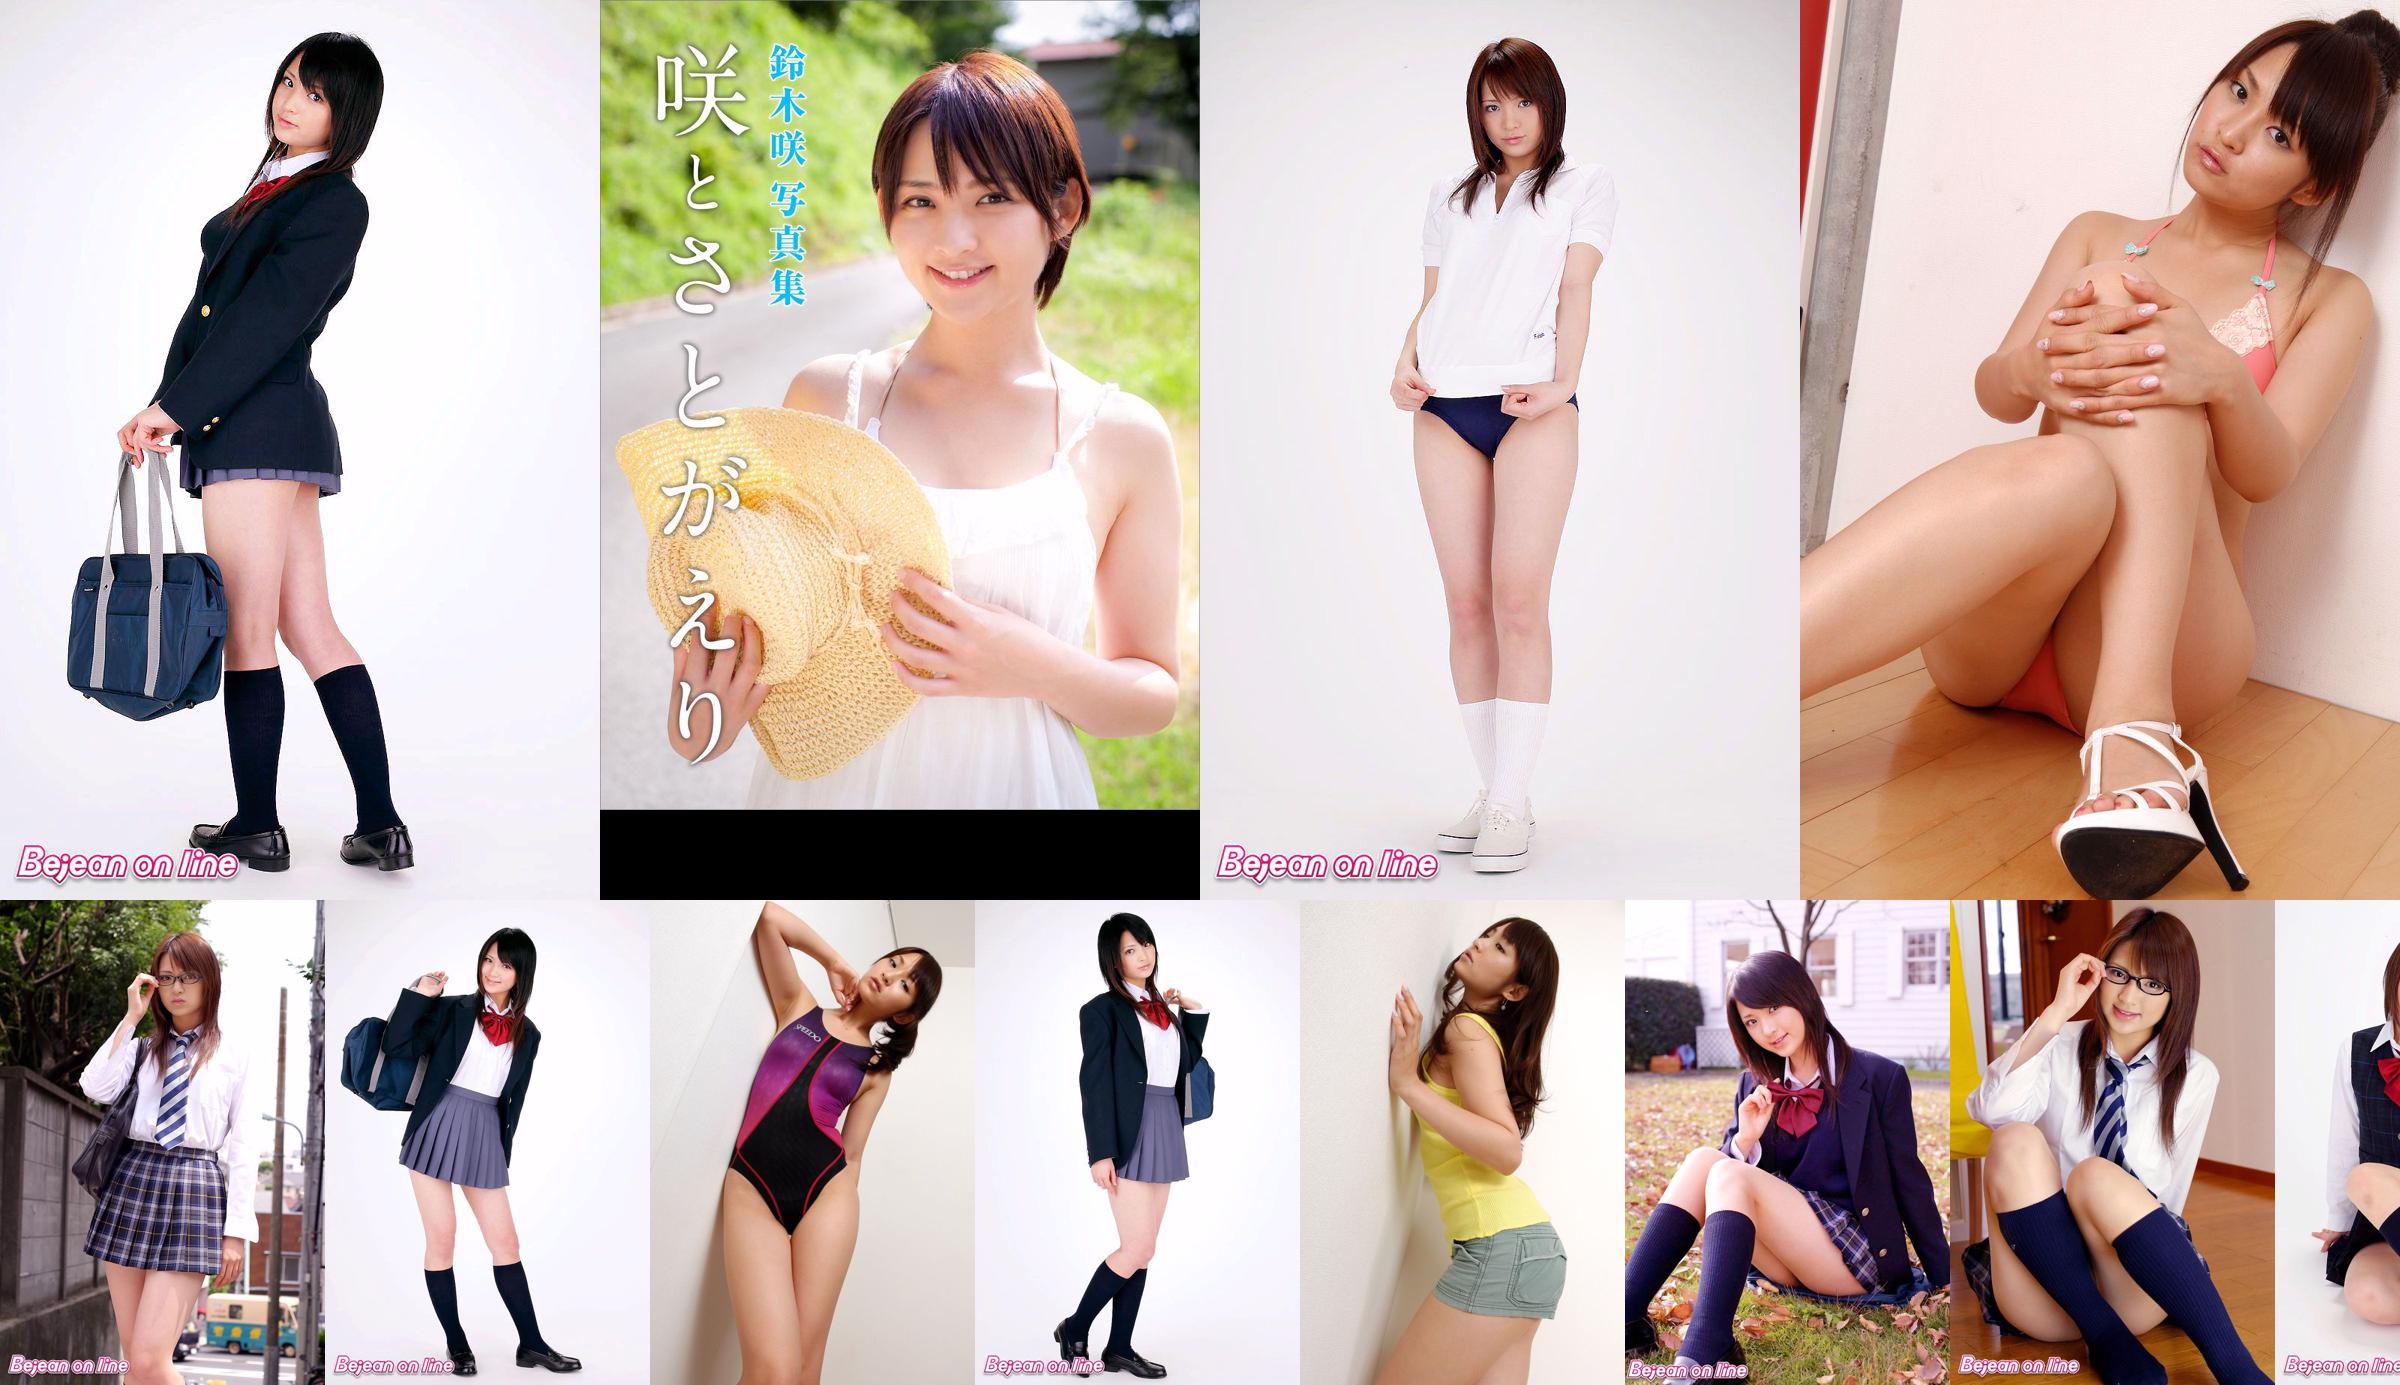 Cover Girl カバーガール Saki Suzuki 鈴木咲 [Bejean On Line] No.94a4e6 第15頁